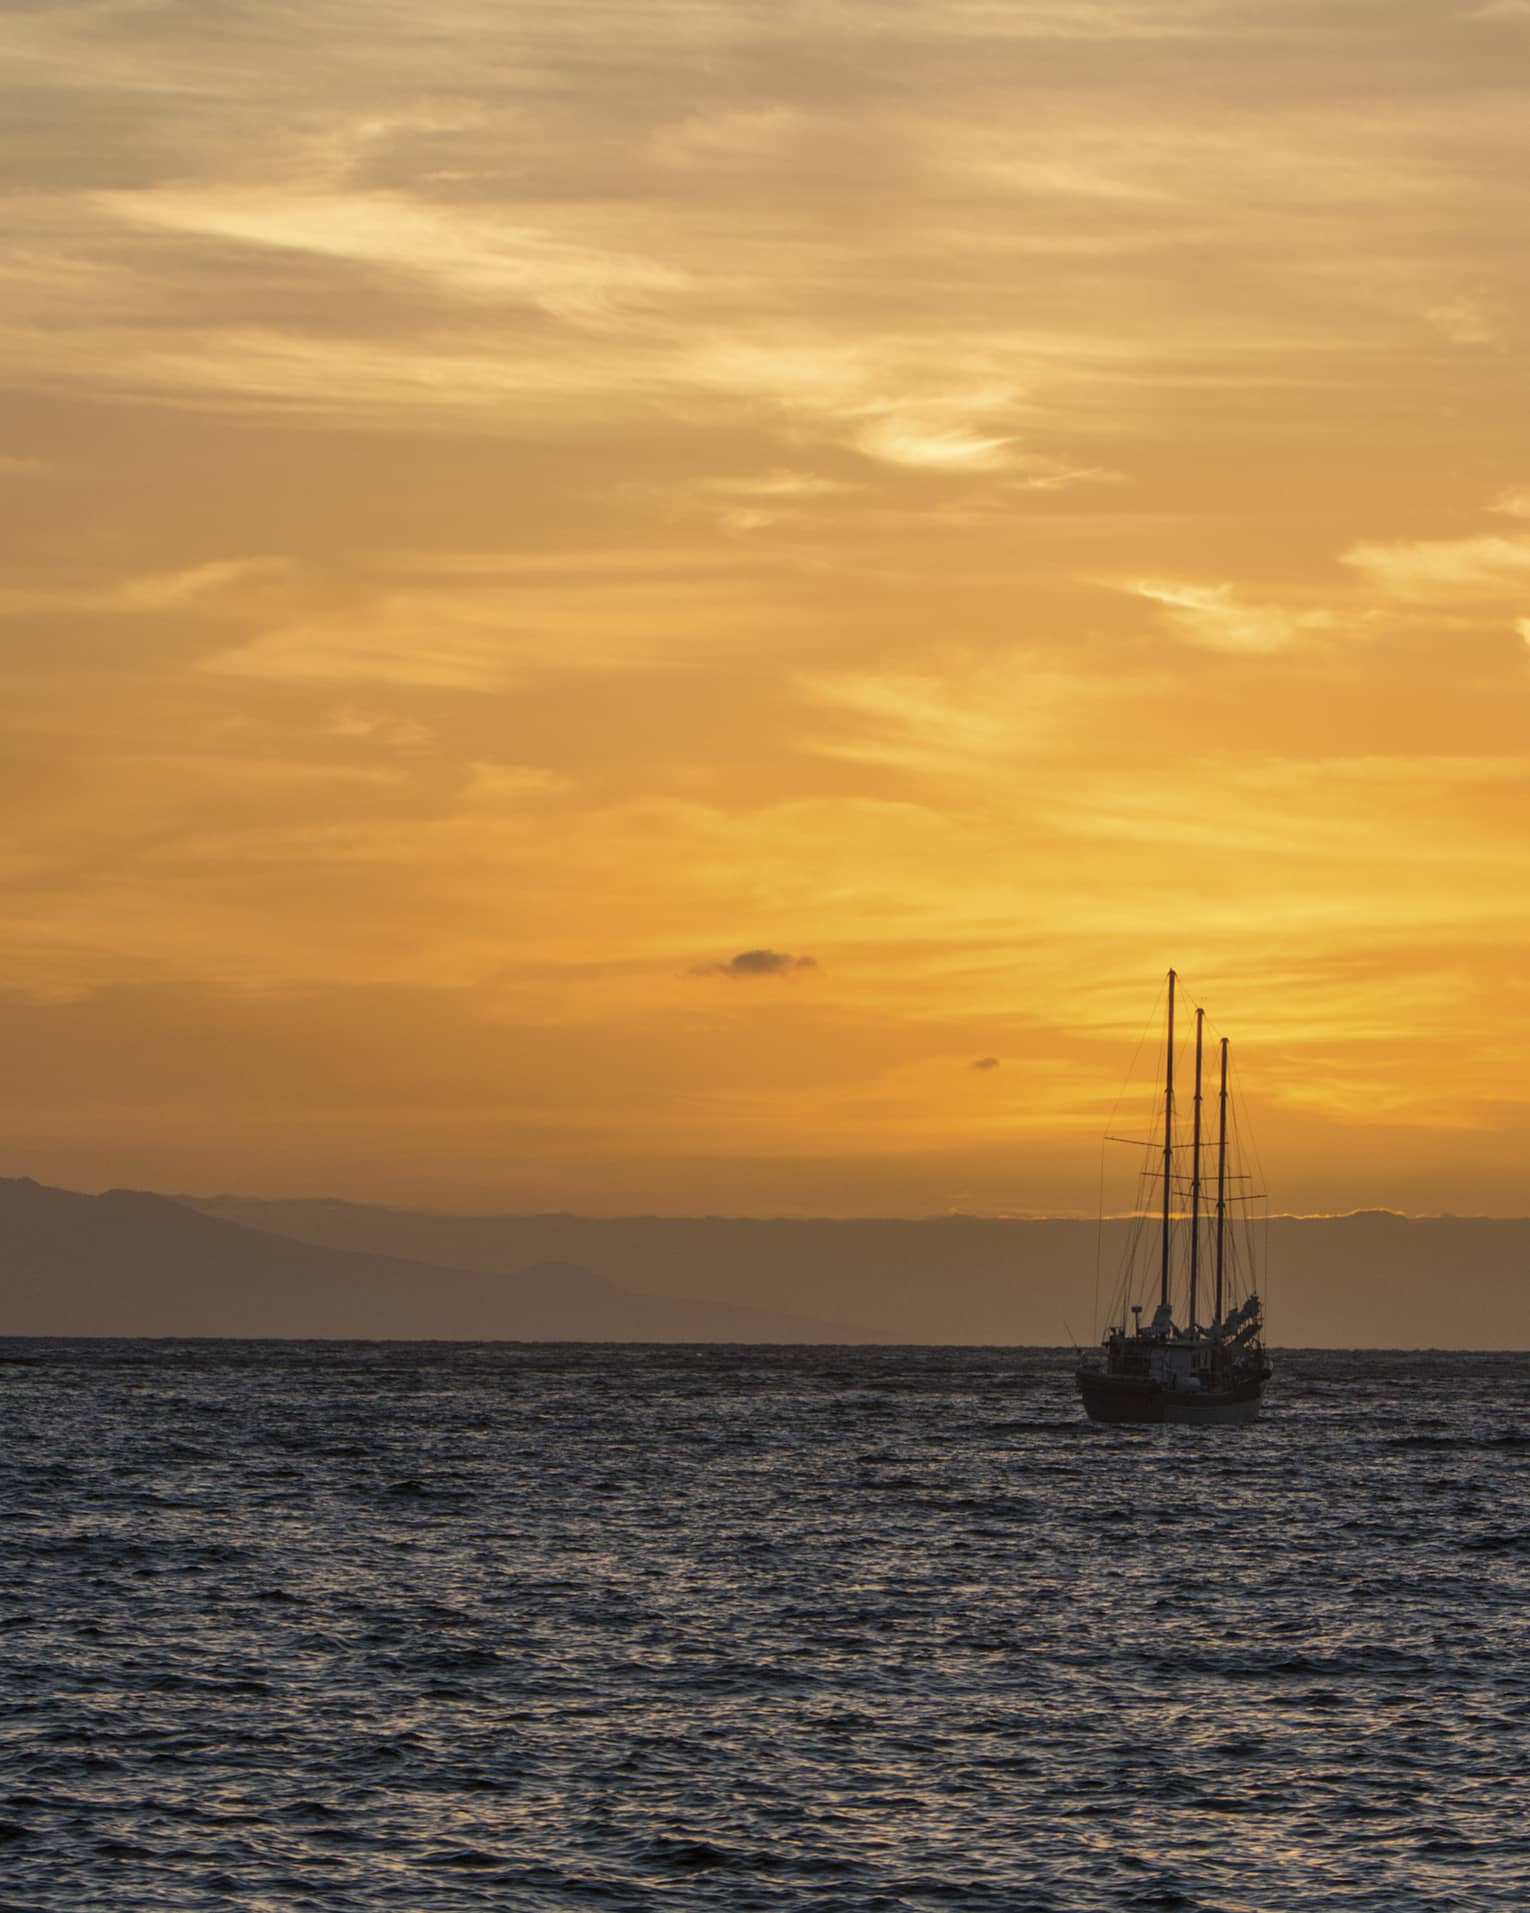 Sailboat silhouette on ocean against orange sunset